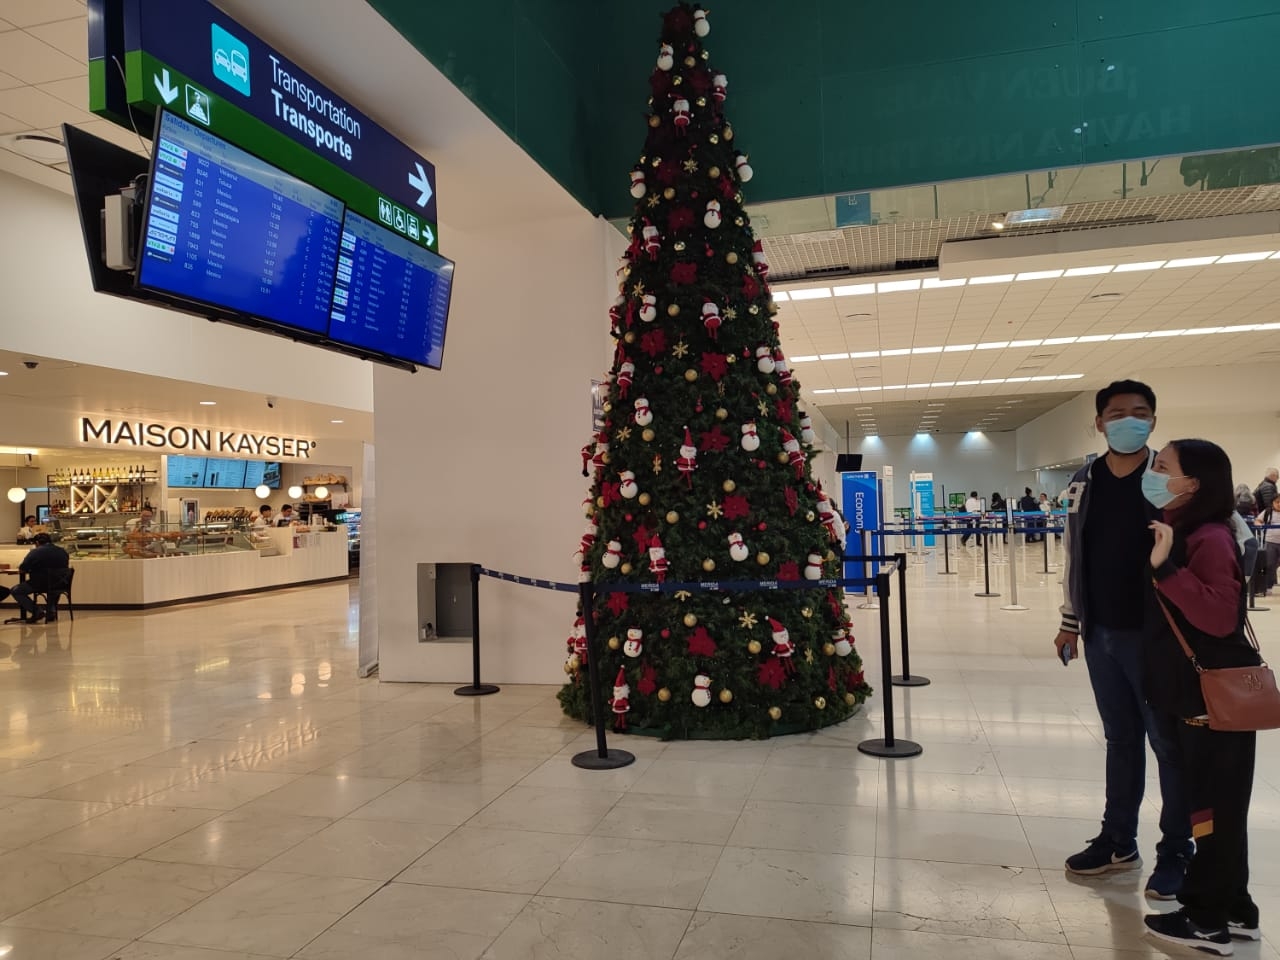 Un árbol de Navidad de casi 4 metros decora la sala del aeropuerto de Mérida